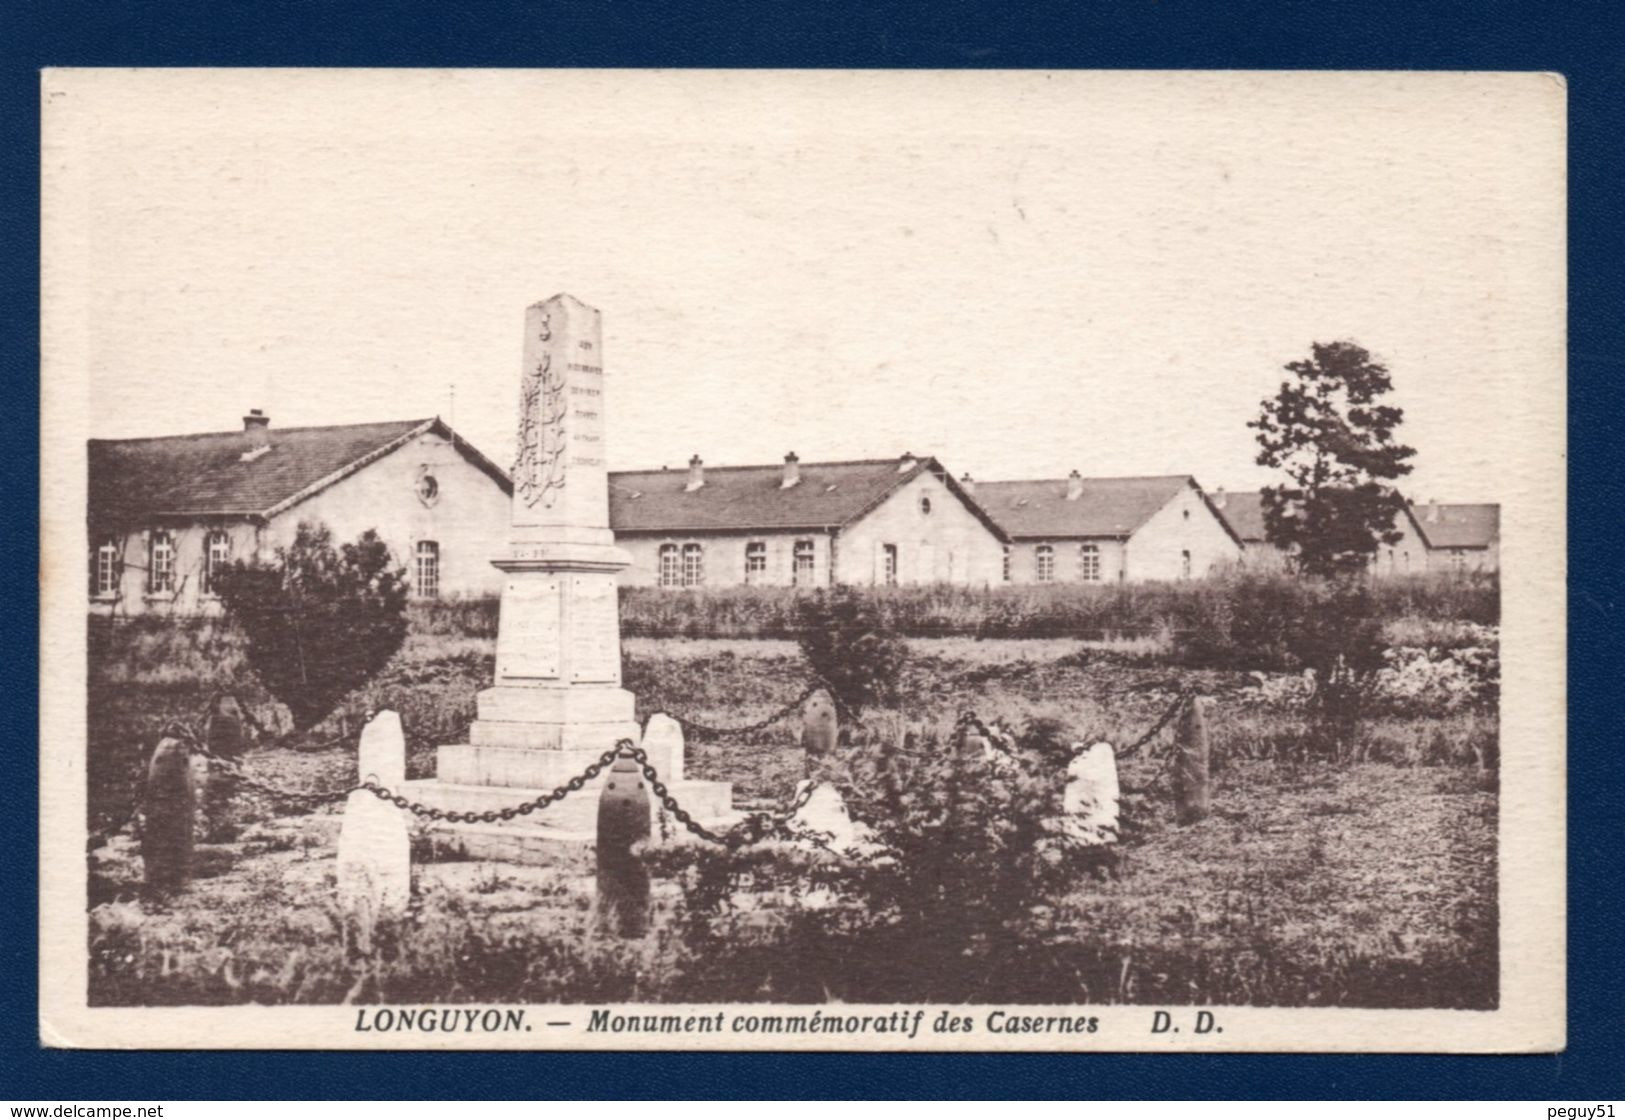 54. Longuyon. Monument Commémoratifs Des Casernes Lamy. (9è B.C.P Et 18è B.C.P.- 1914-18 - Cimetière Ste- Agathe) - Kriegerdenkmal